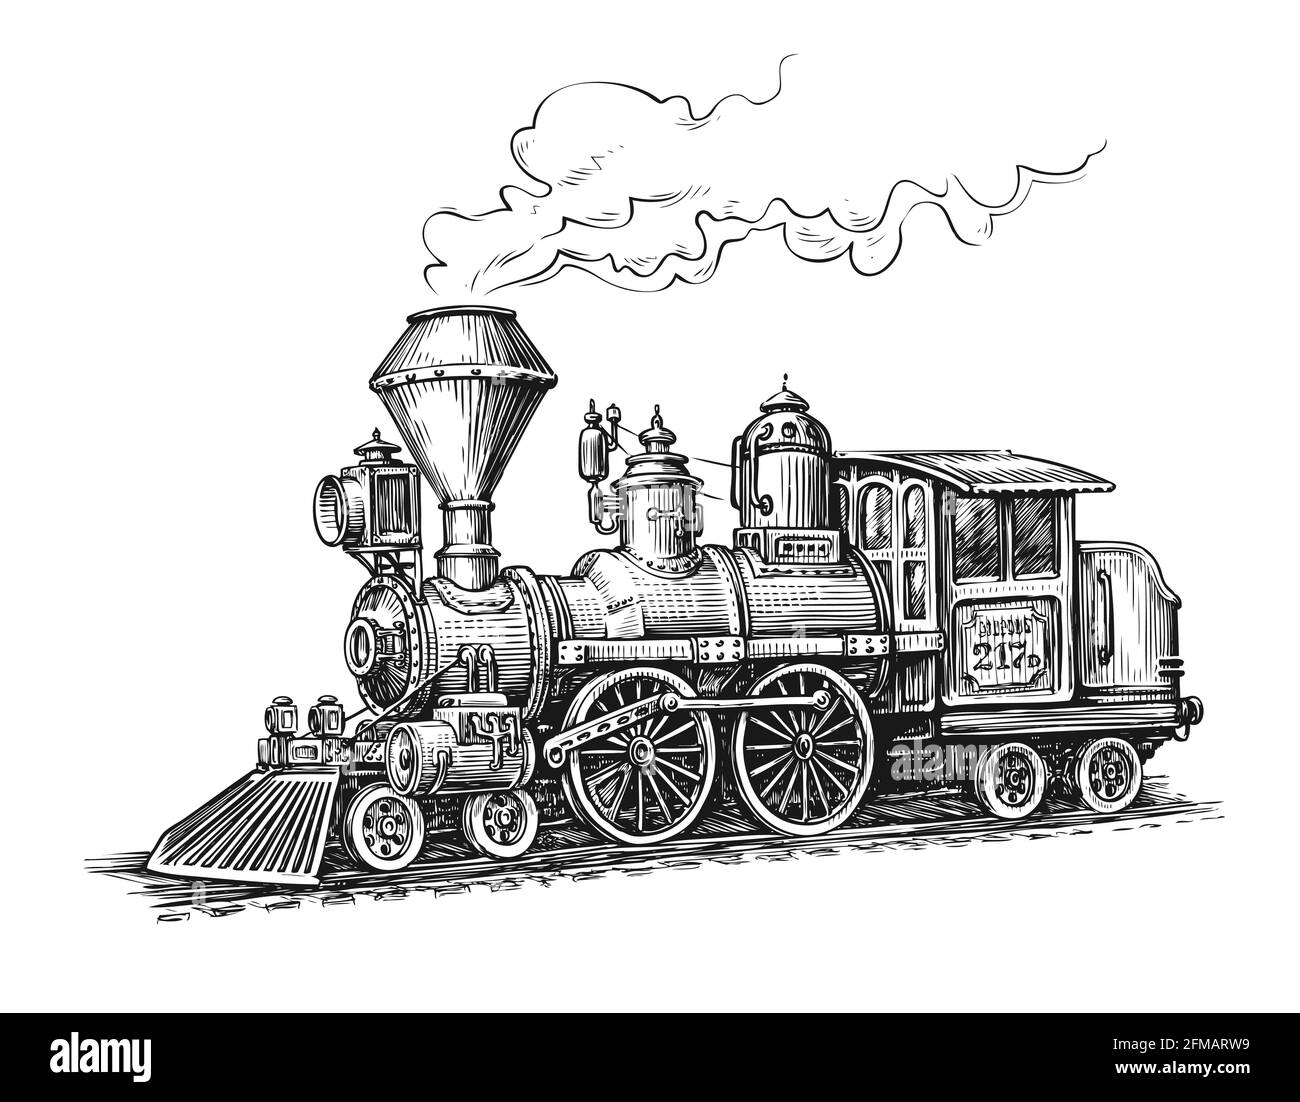 Schéma de transport de locomotive à vapeur rétro. Illustration vectorielle vintage dessinée à la main Illustration de Vecteur